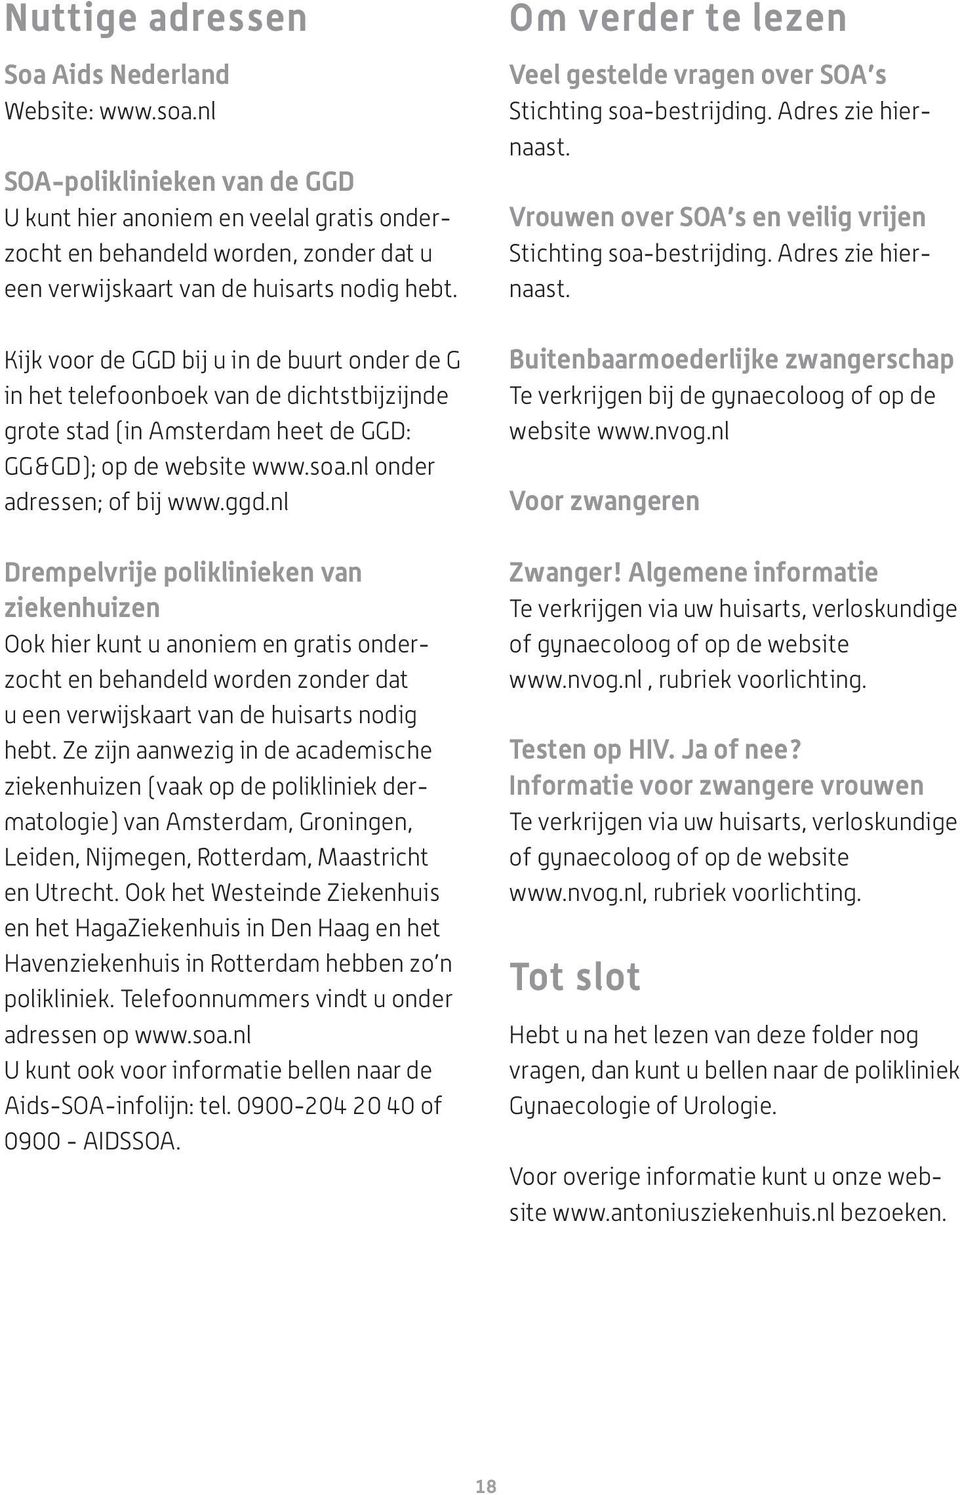 Kijk voor de GGD bij u in de buurt onder de G in het telefoonboek van de dichtstbijzijnde grote stad (in Amsterdam heet de GGD: GG&GD); op de website www.soa.nl onder adressen; of bij www.ggd.